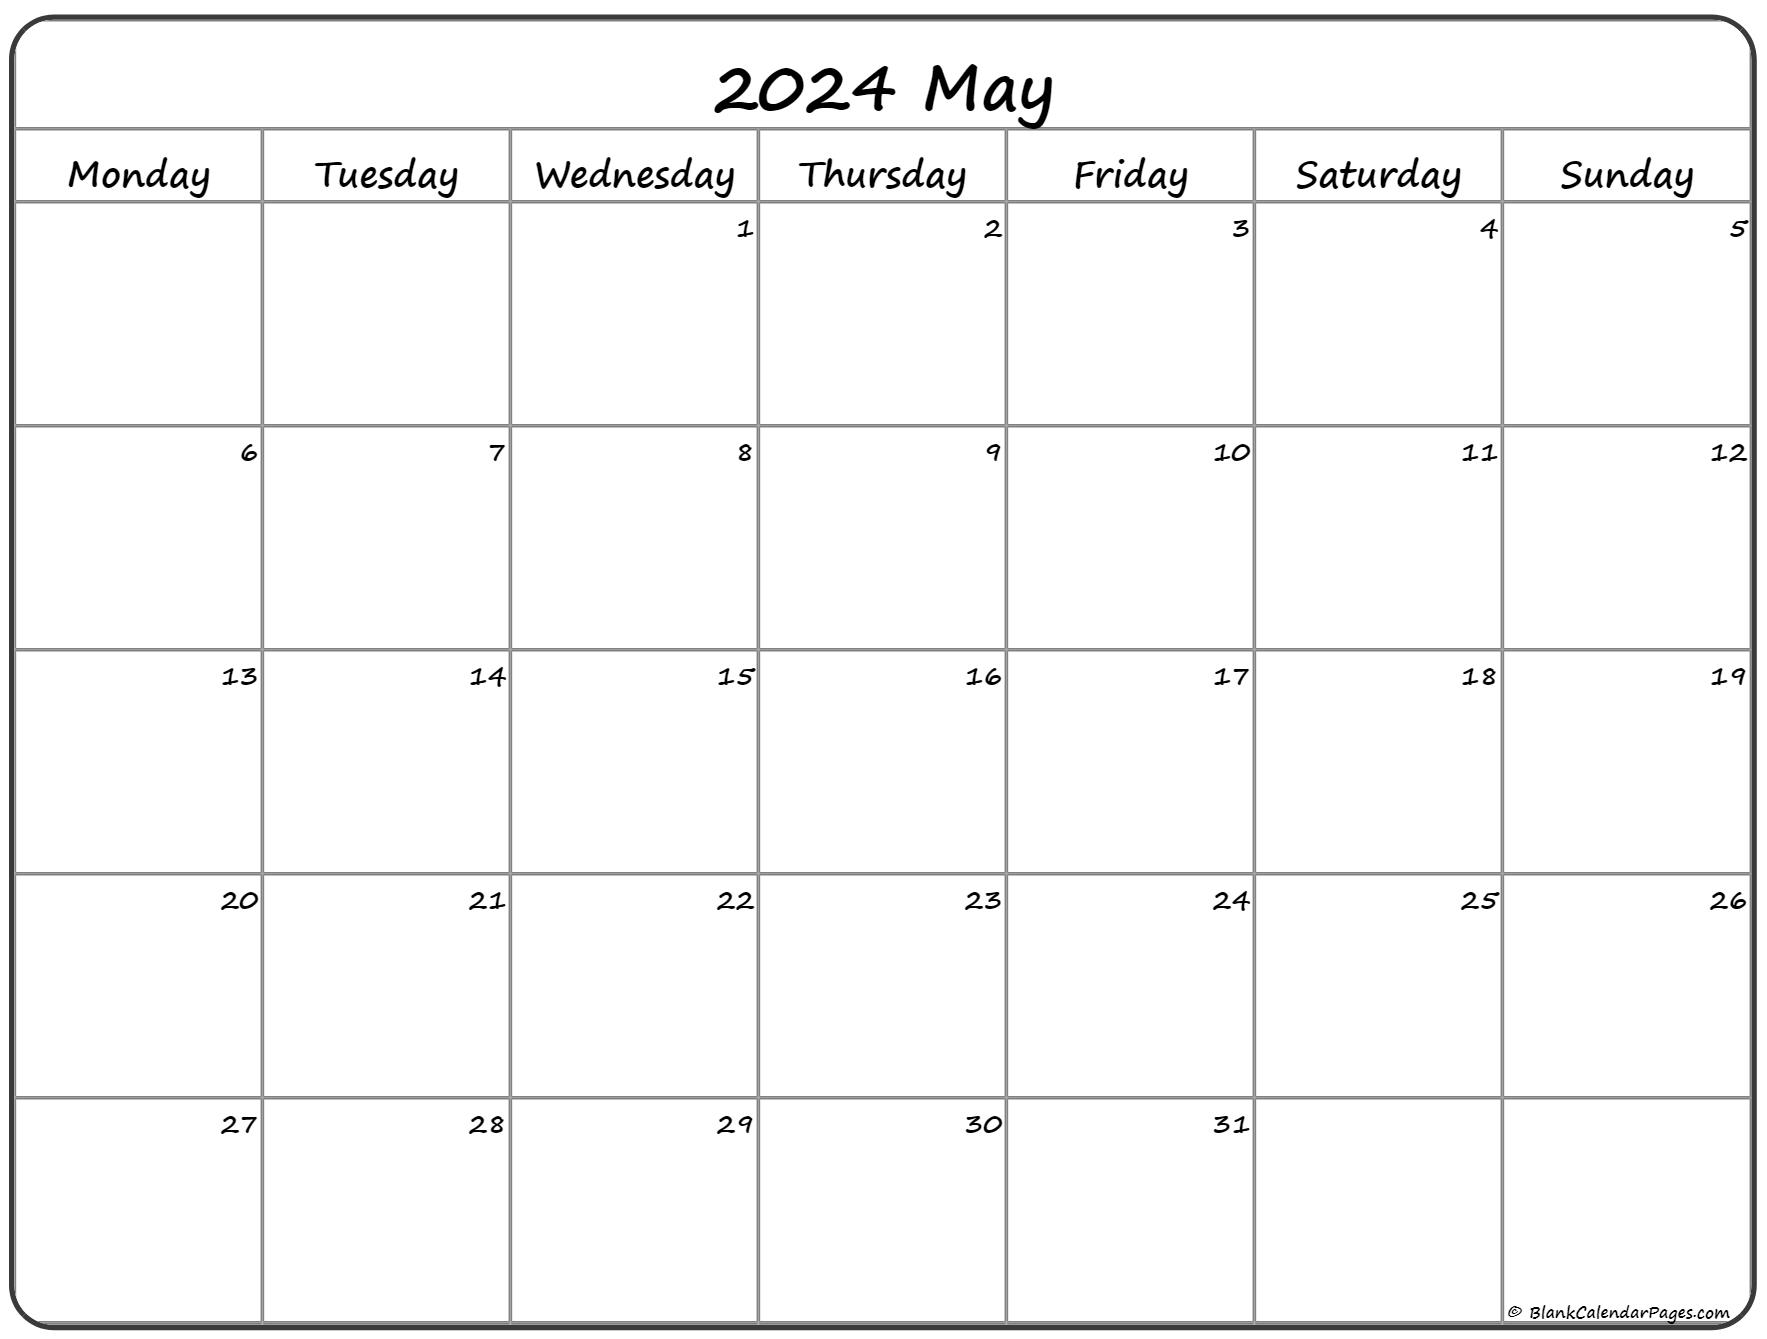 May 2023 Calendar Monday Start Get Calendar 2023 Update